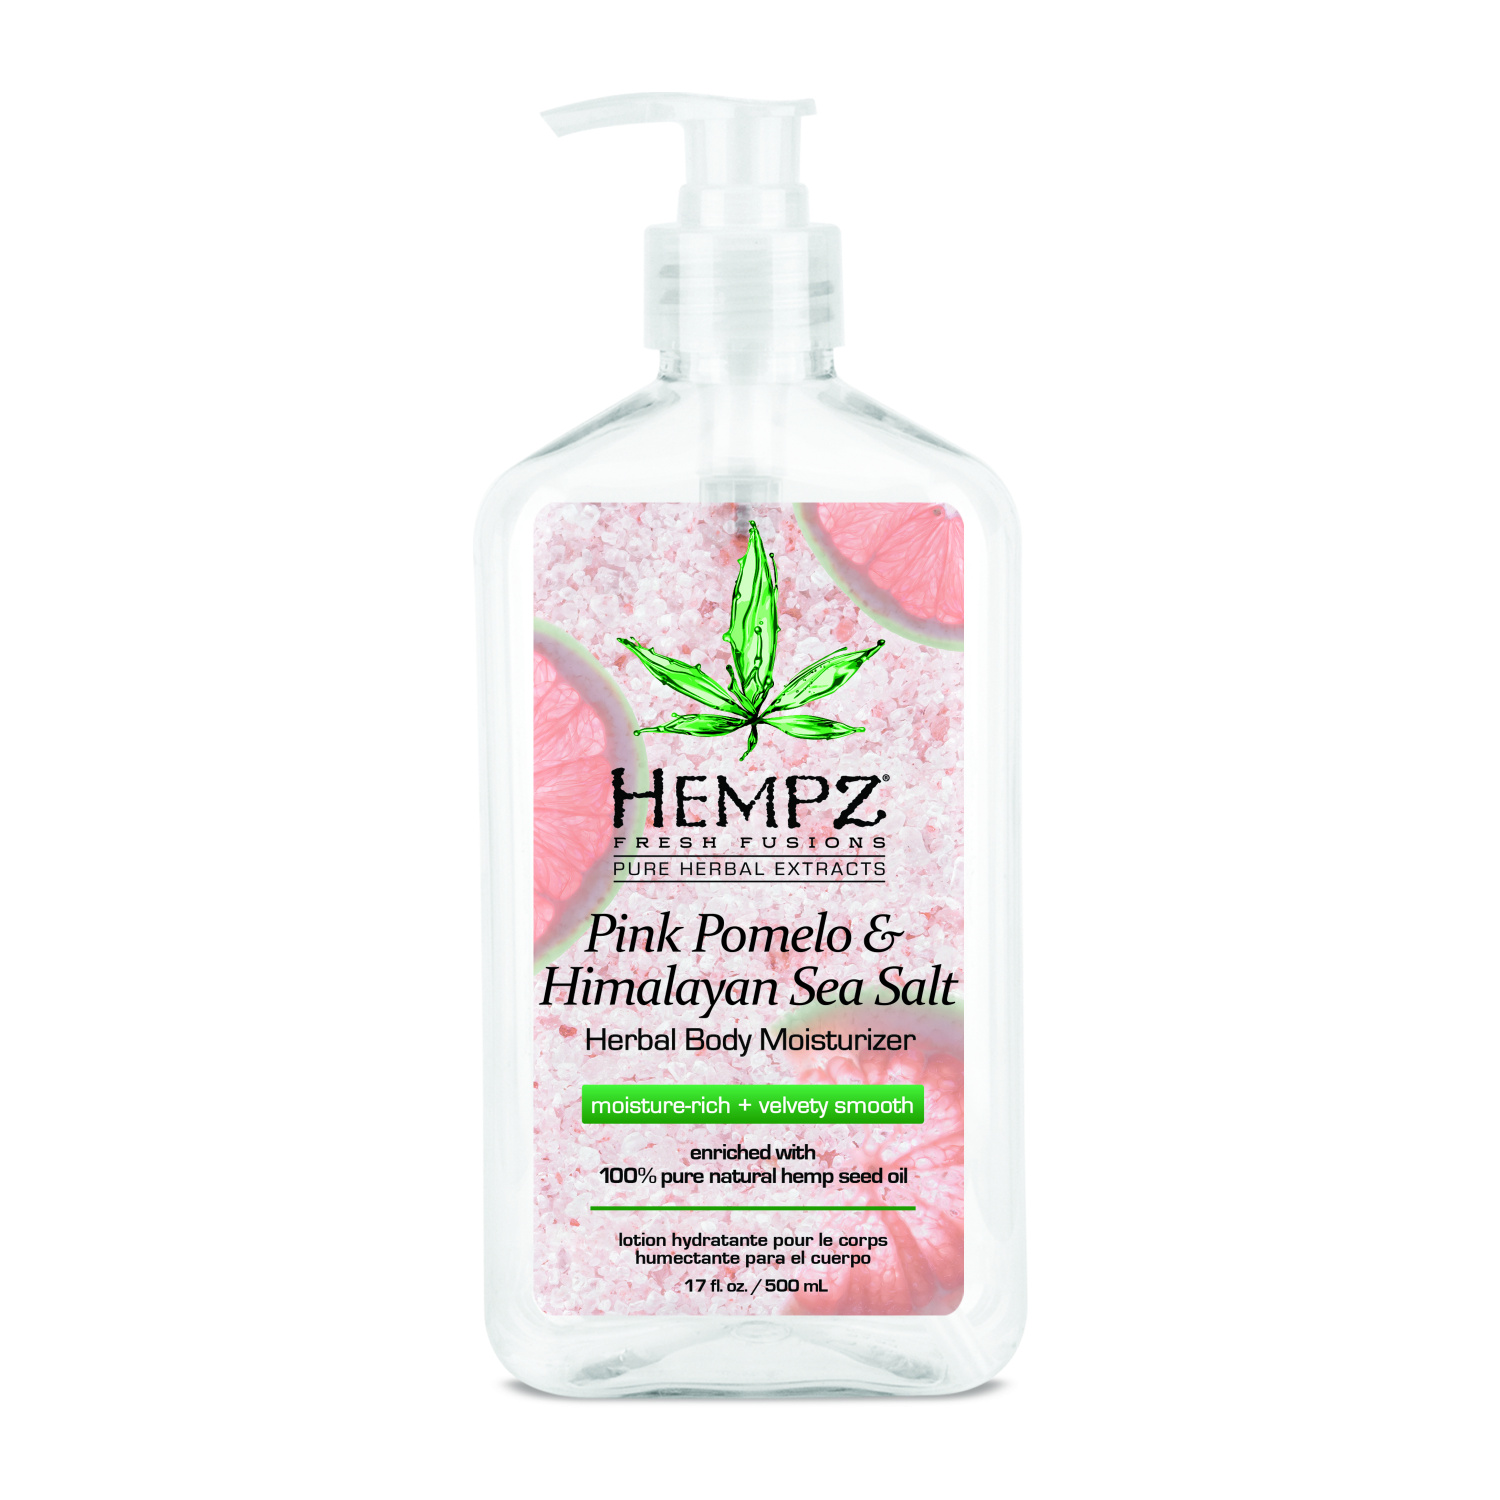 Hempz Pink Pomelo & Himalayan Sea Salt Herbal Body Moisturizer 500ml - интернет-магазин профессиональной косметики Spadream, изображение 26880